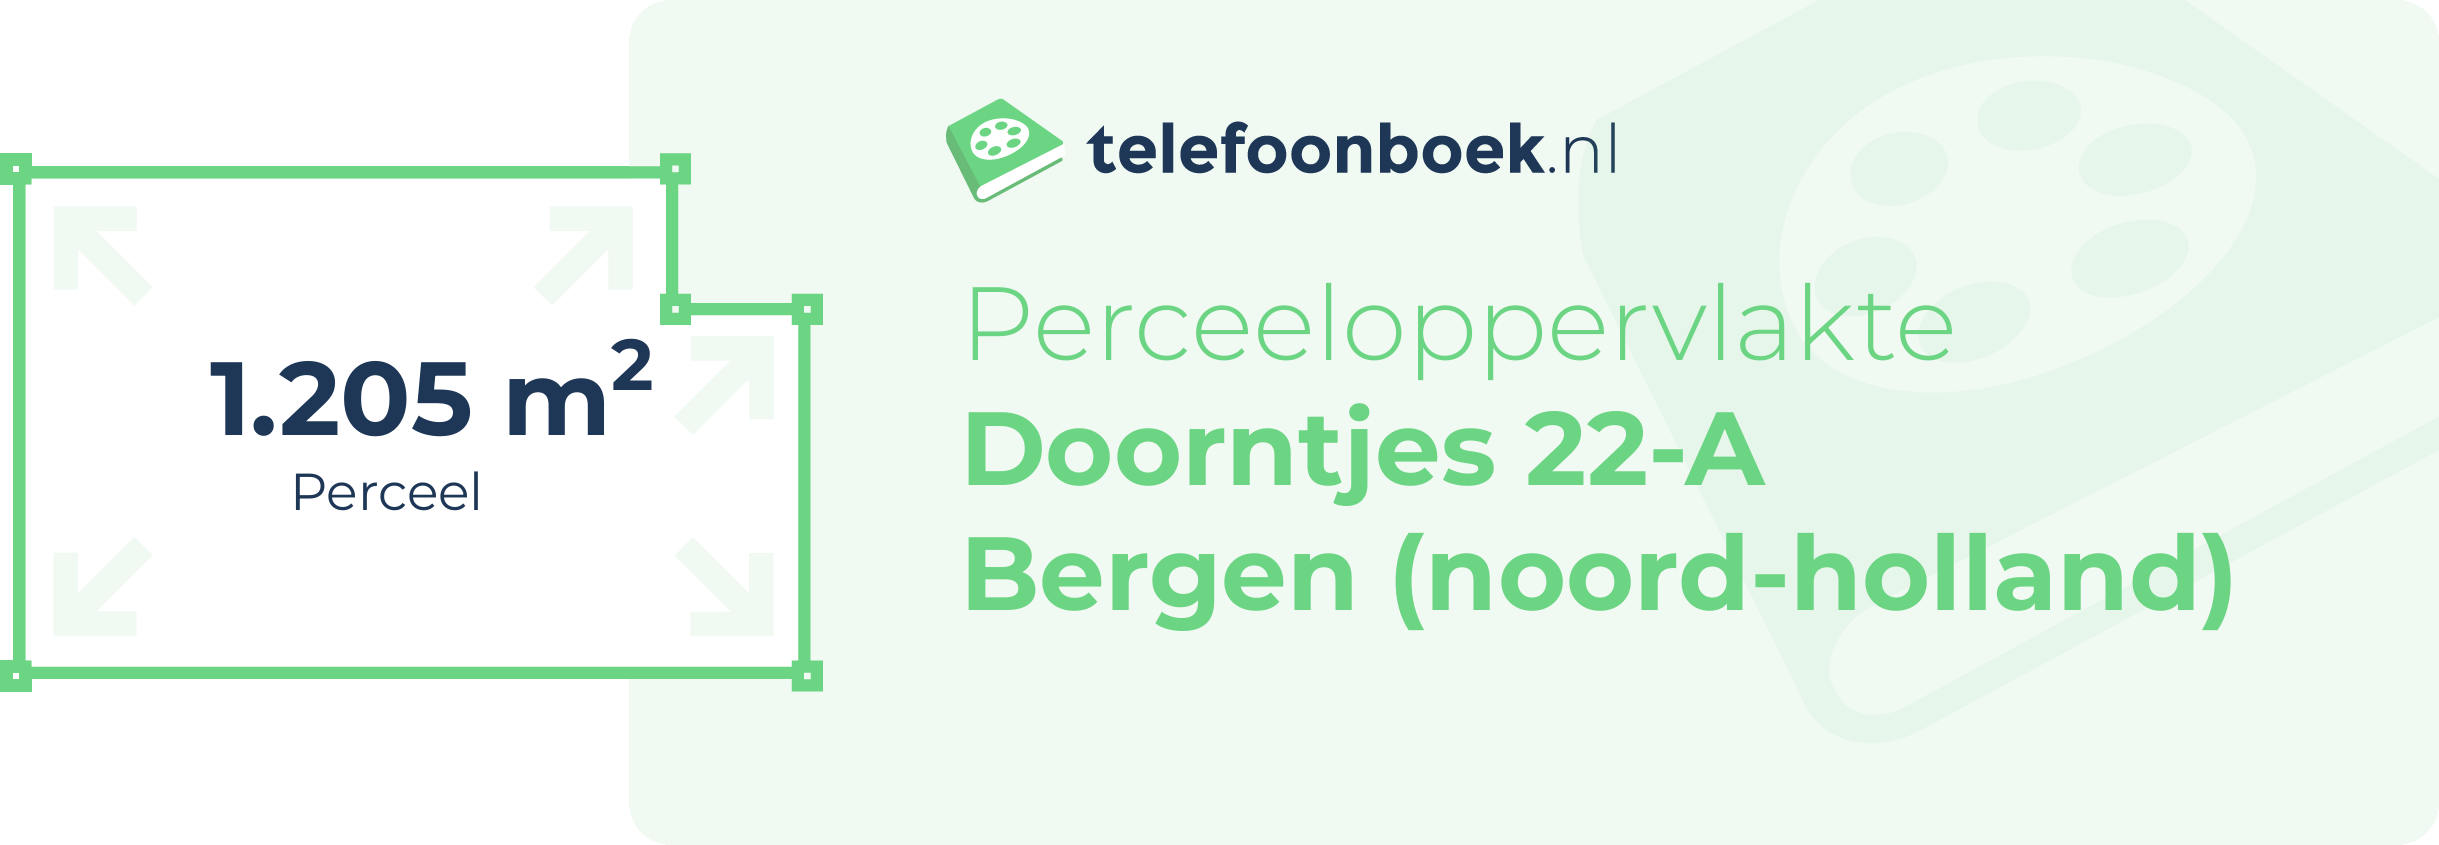 Perceeloppervlakte Doorntjes 22-A Bergen (Noord-Holland)